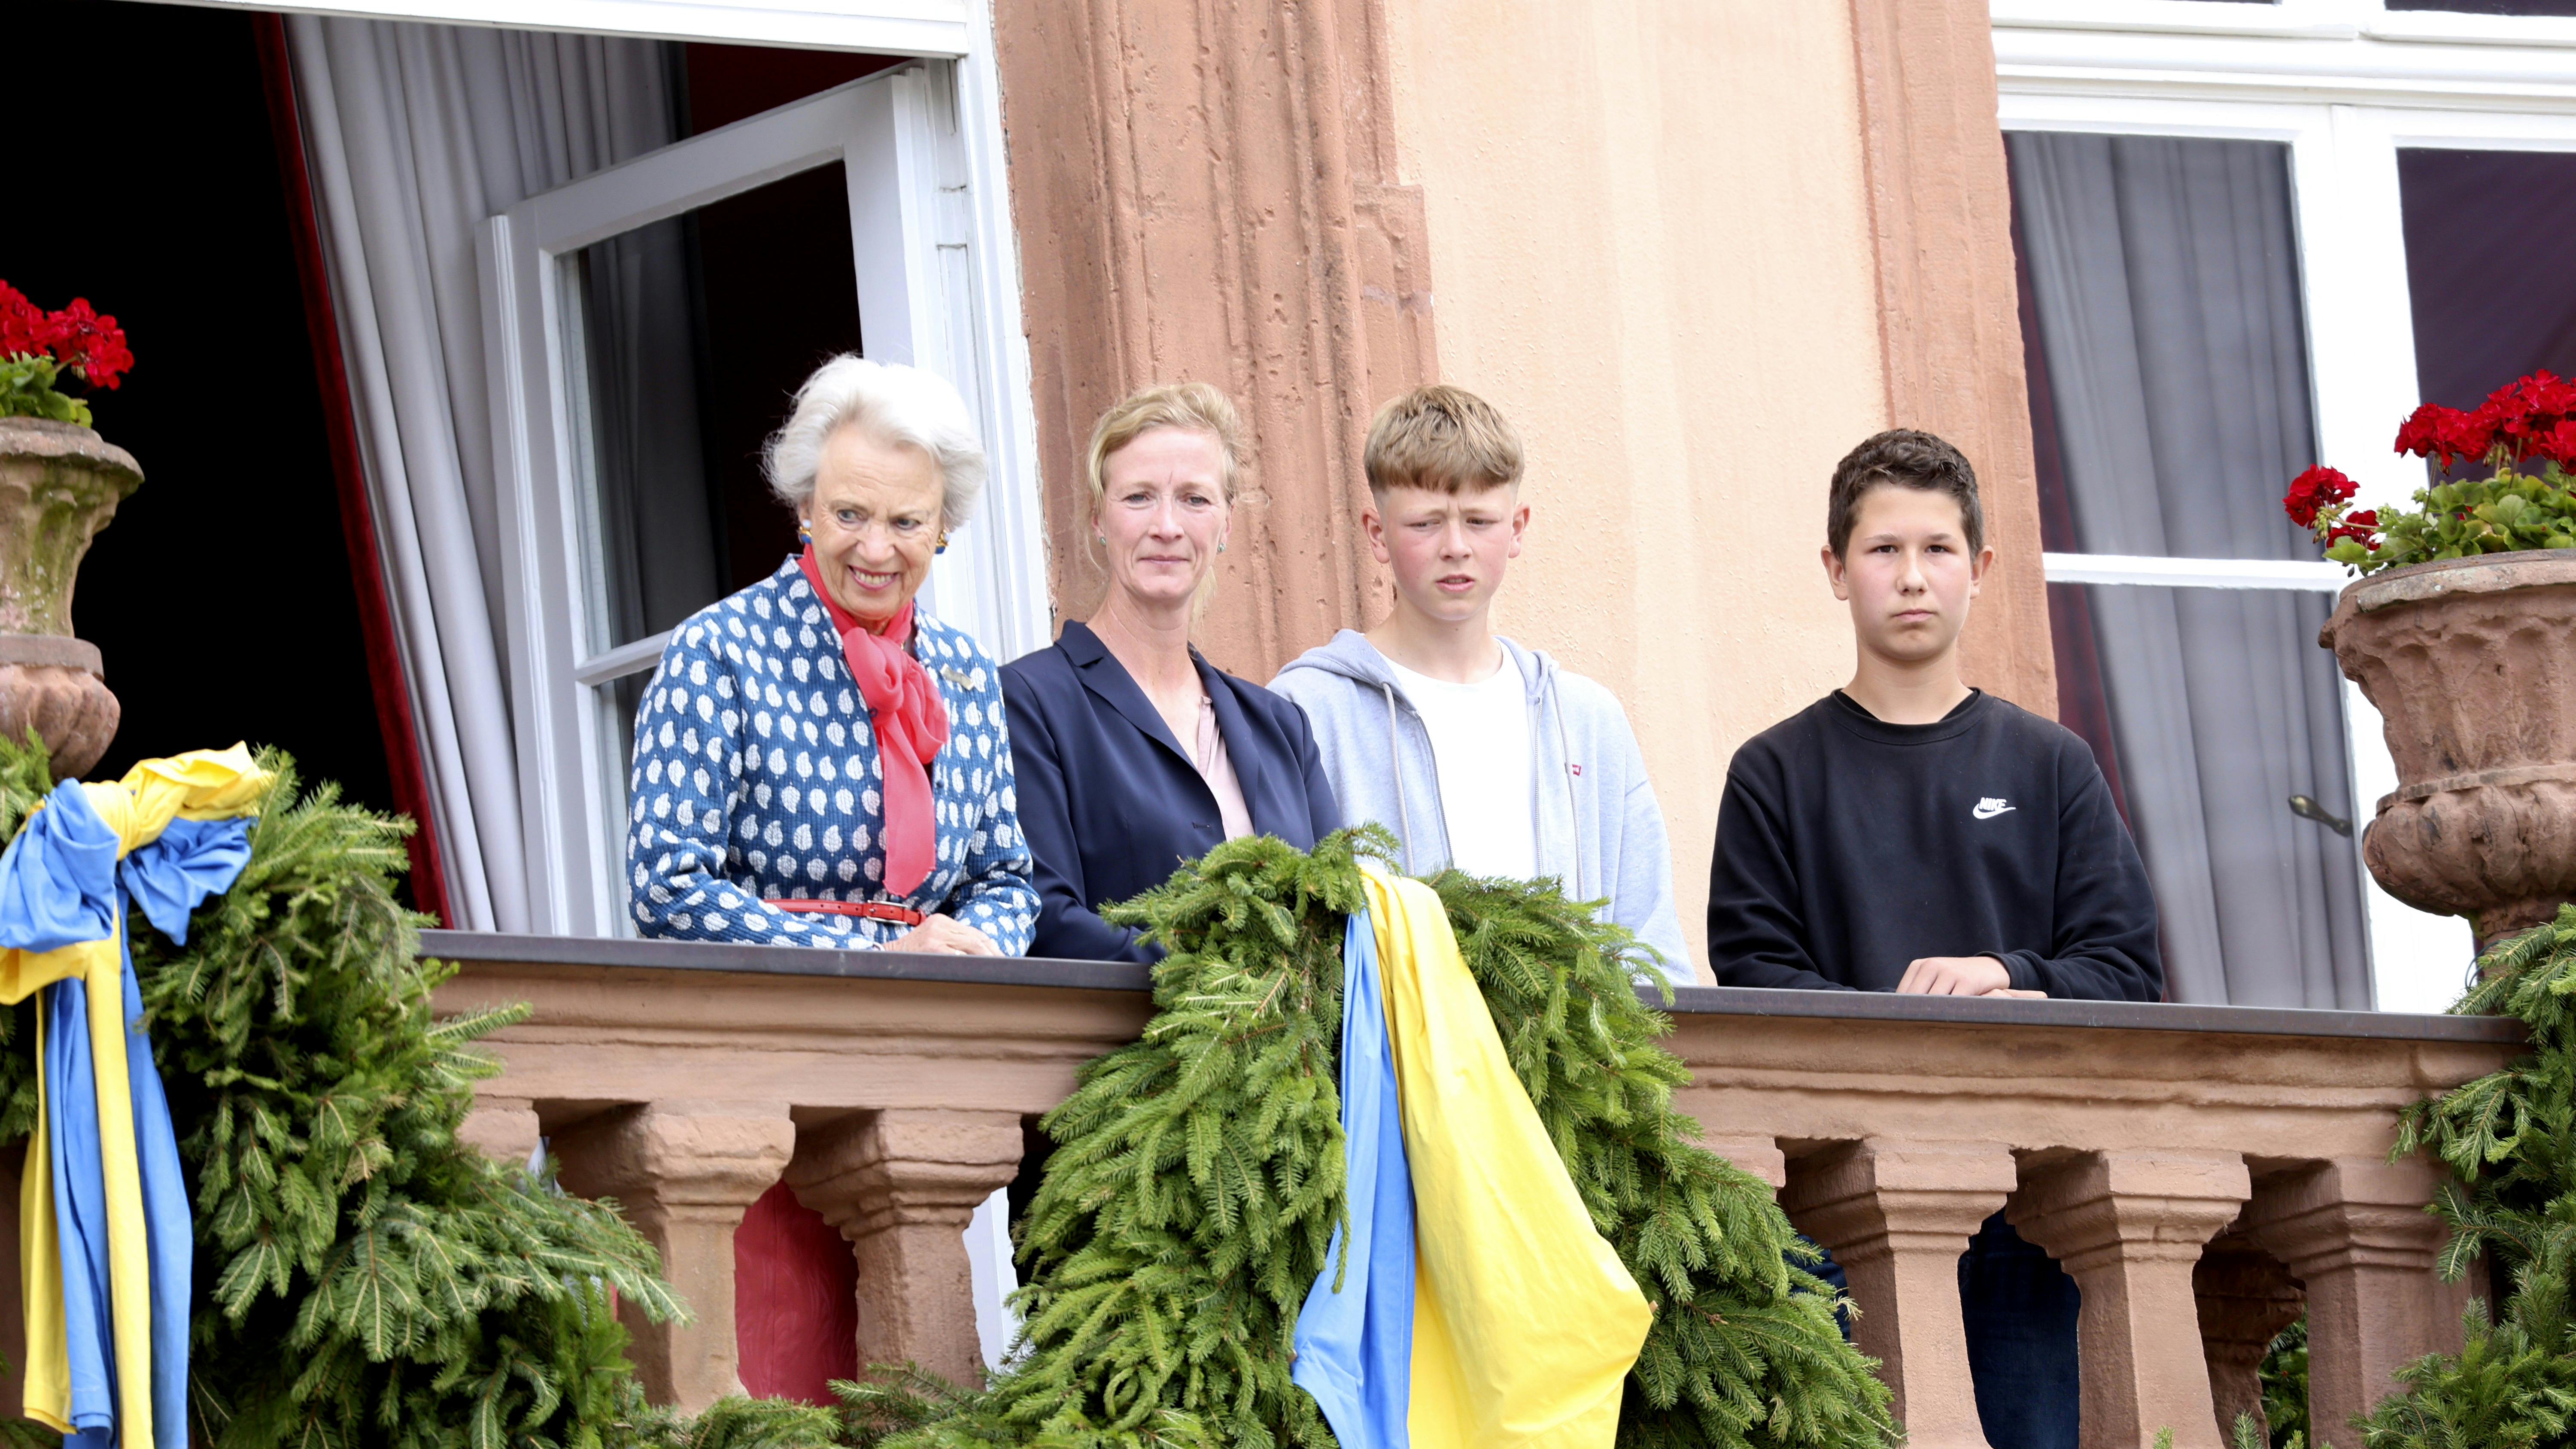 Prinsesse Benedikte, prinsesse Nathalie og Konstantin, der havde sin ven Marc med, overværede festoptoget på slotspladsen fra balkonen.
